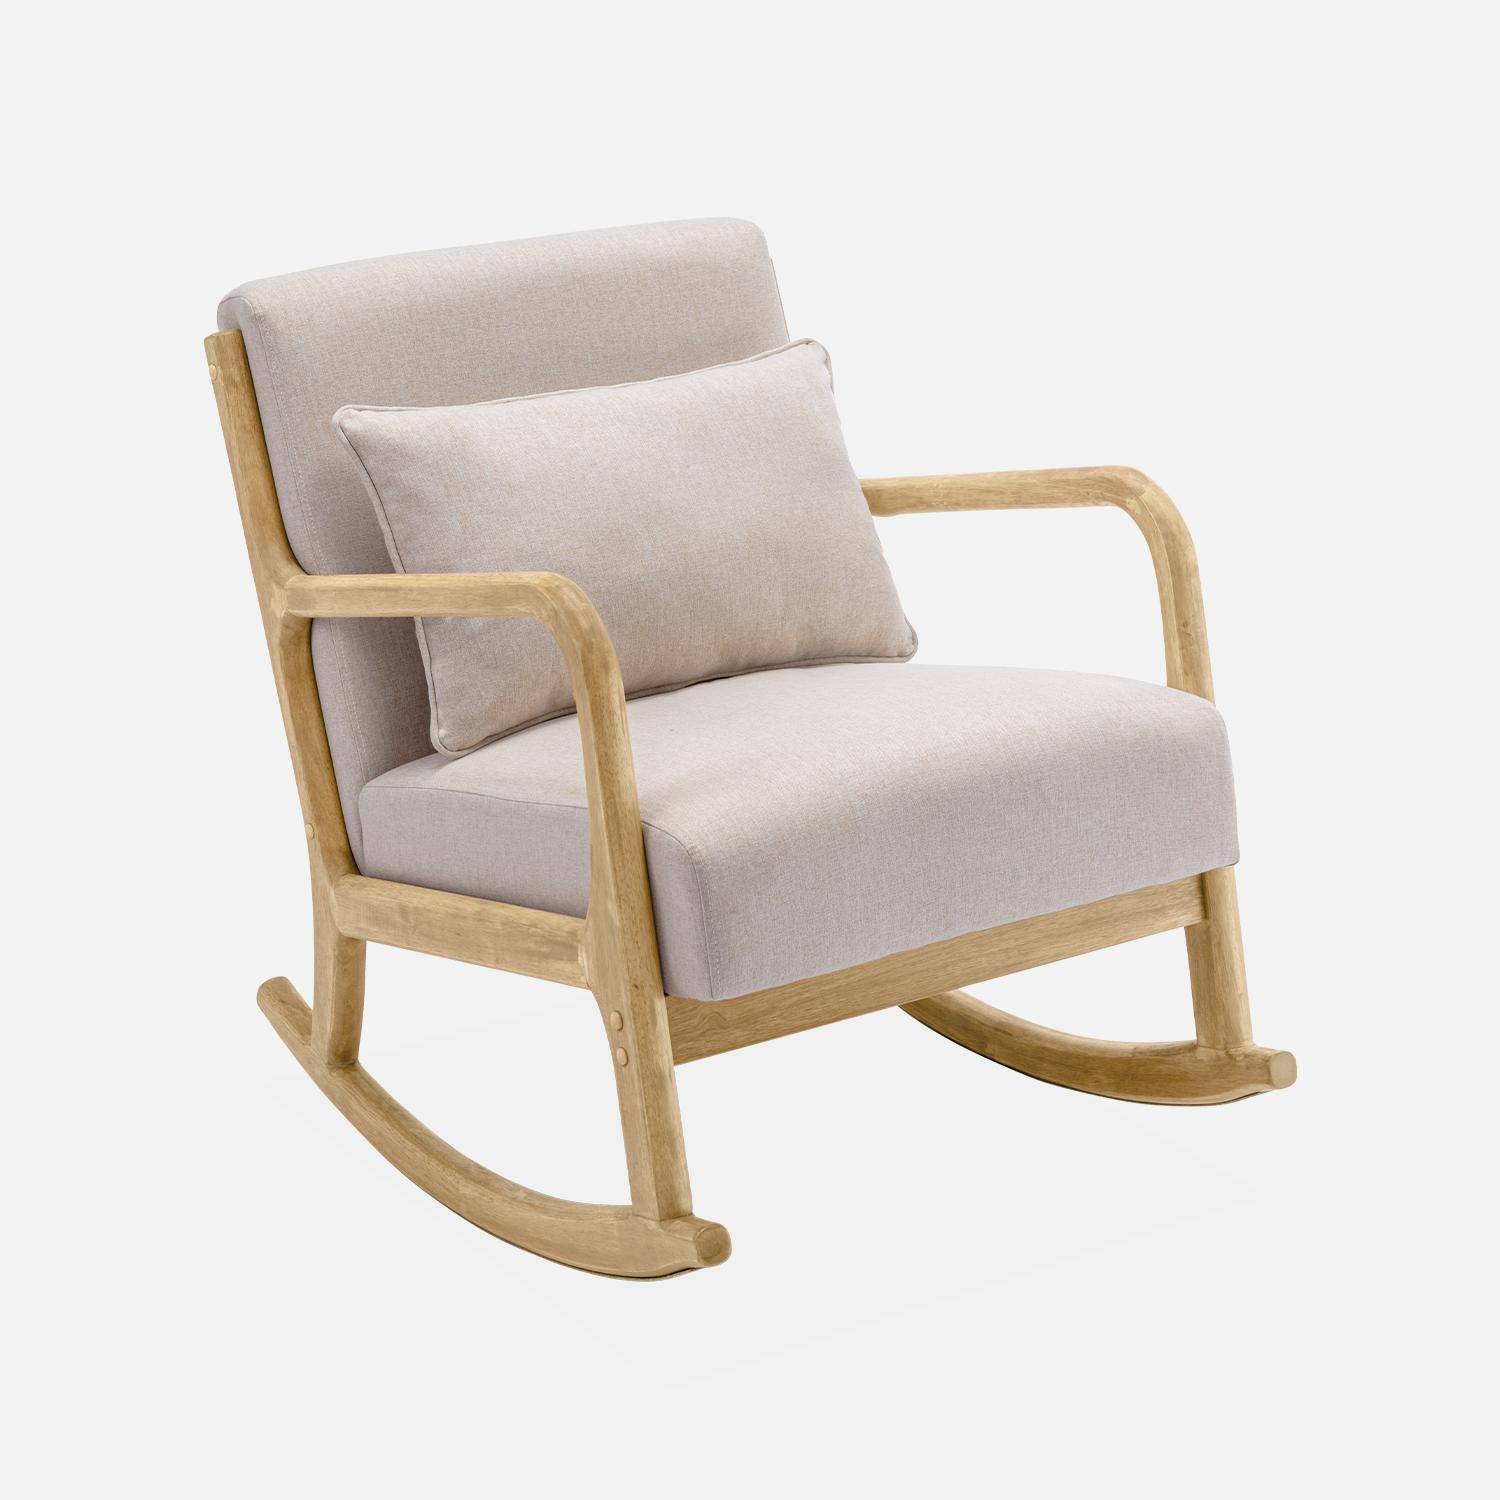 Sedia a dondolo di design in legno e tessuto, 1 posto, sedia a dondolo scandinava, beige Photo3